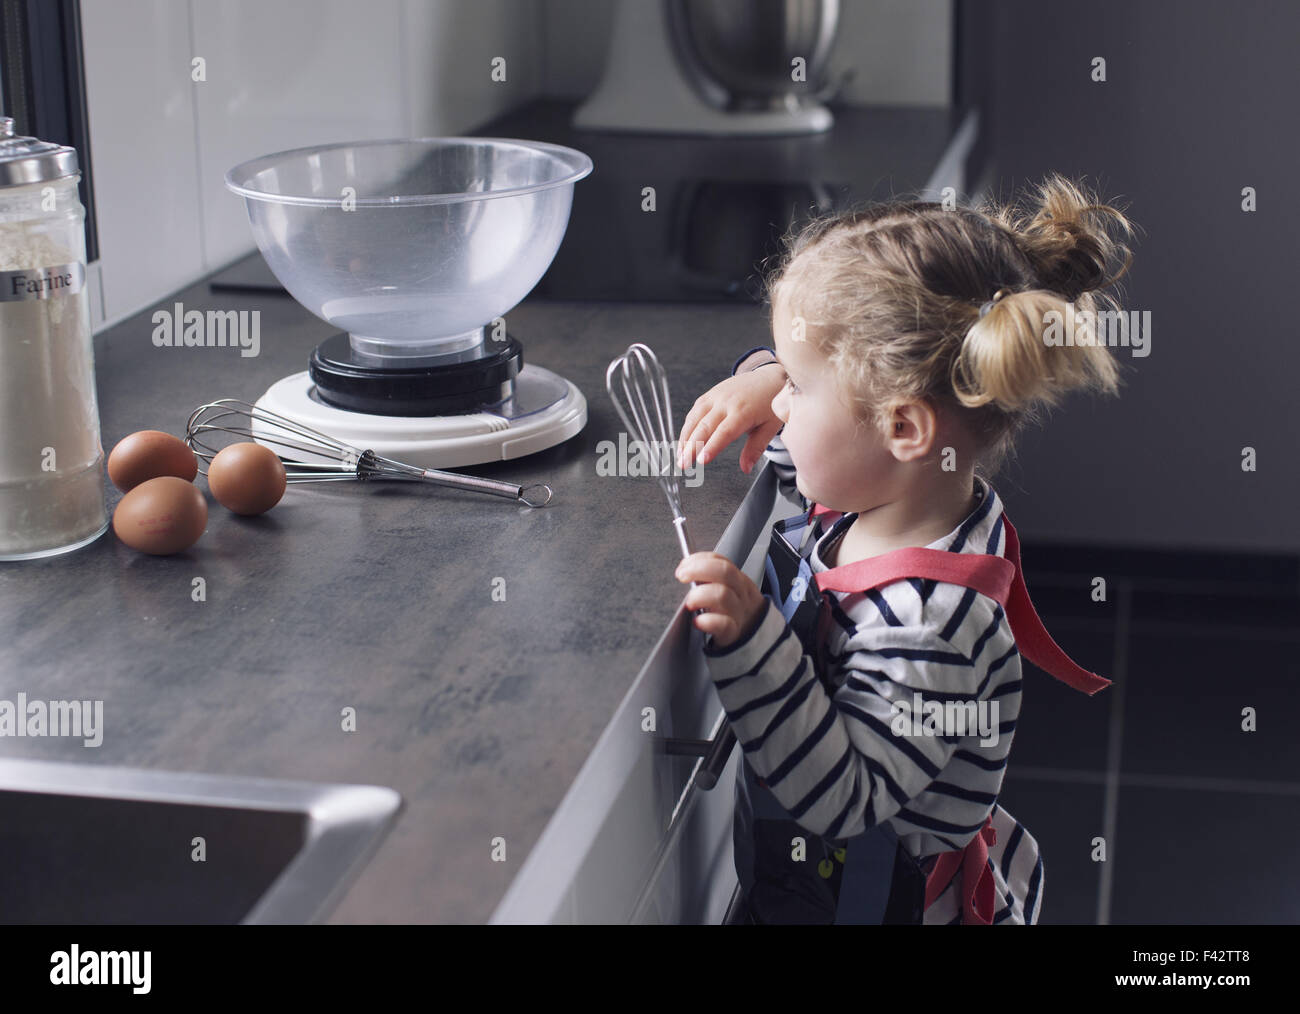 Kleines Mädchen mit Schneebesen in der Küche Stockfoto